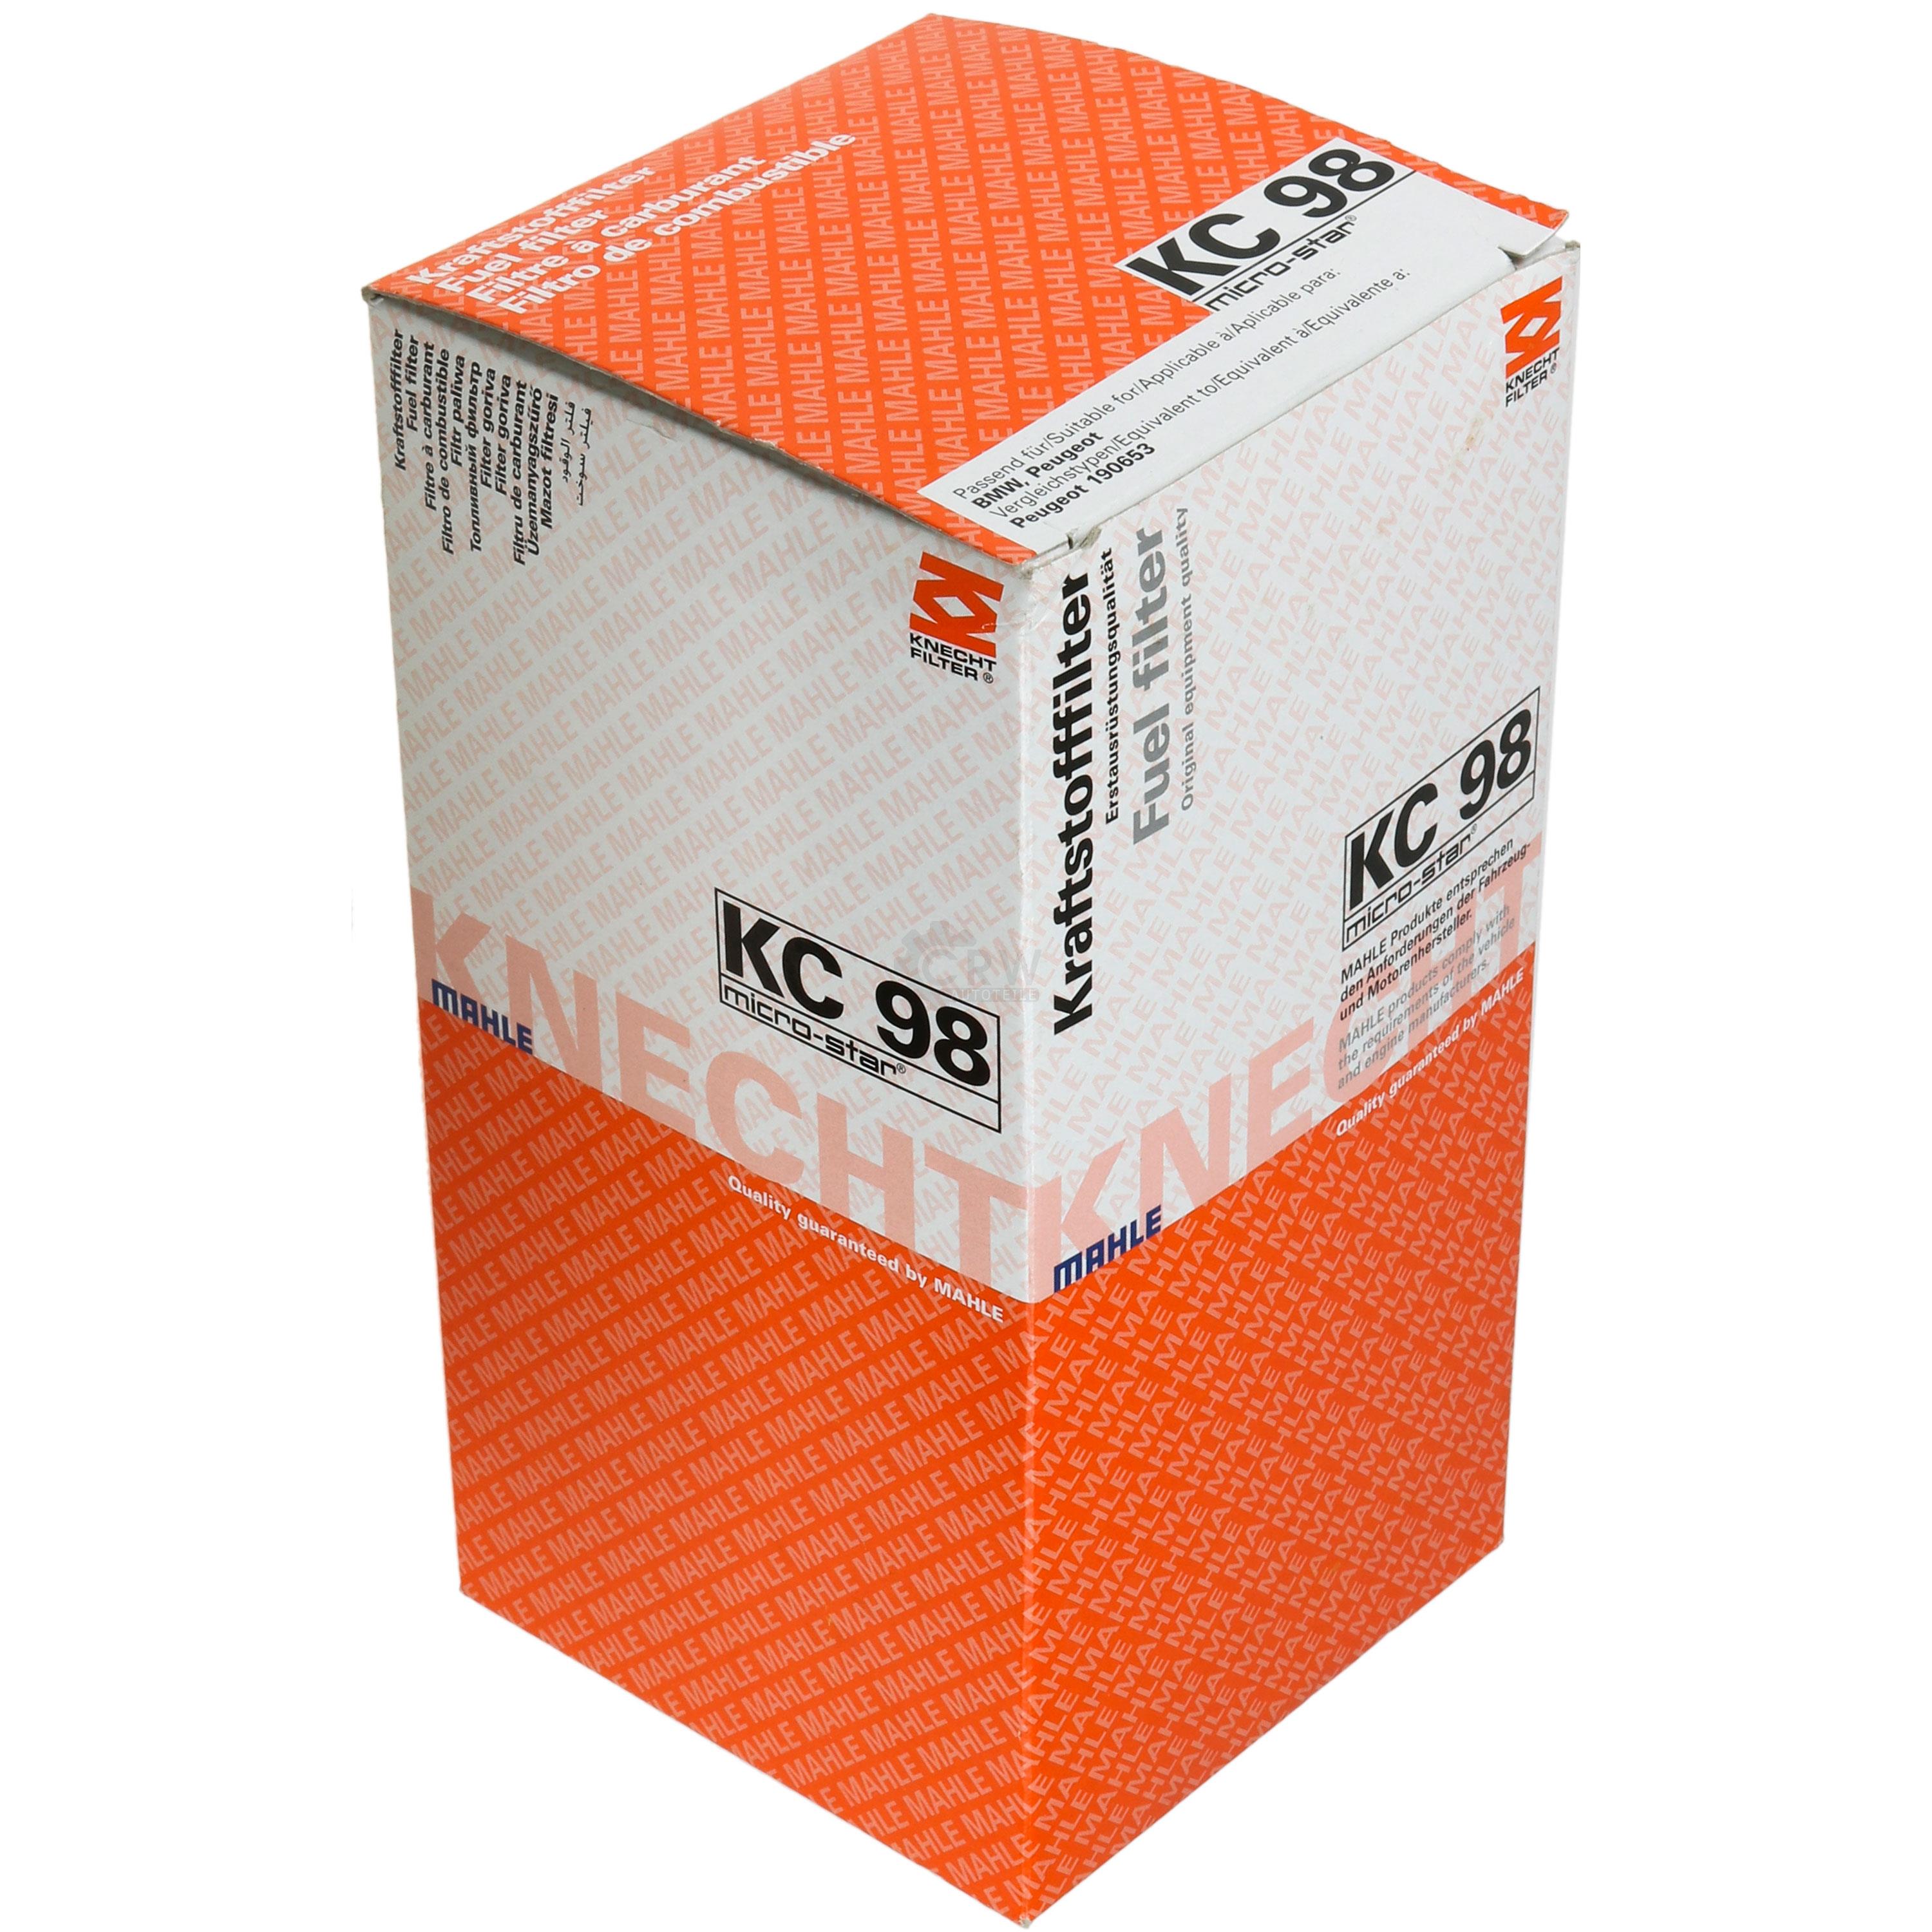 MAHLE / KNECHT KC 98 Kraftstofffilter Filter Fuel